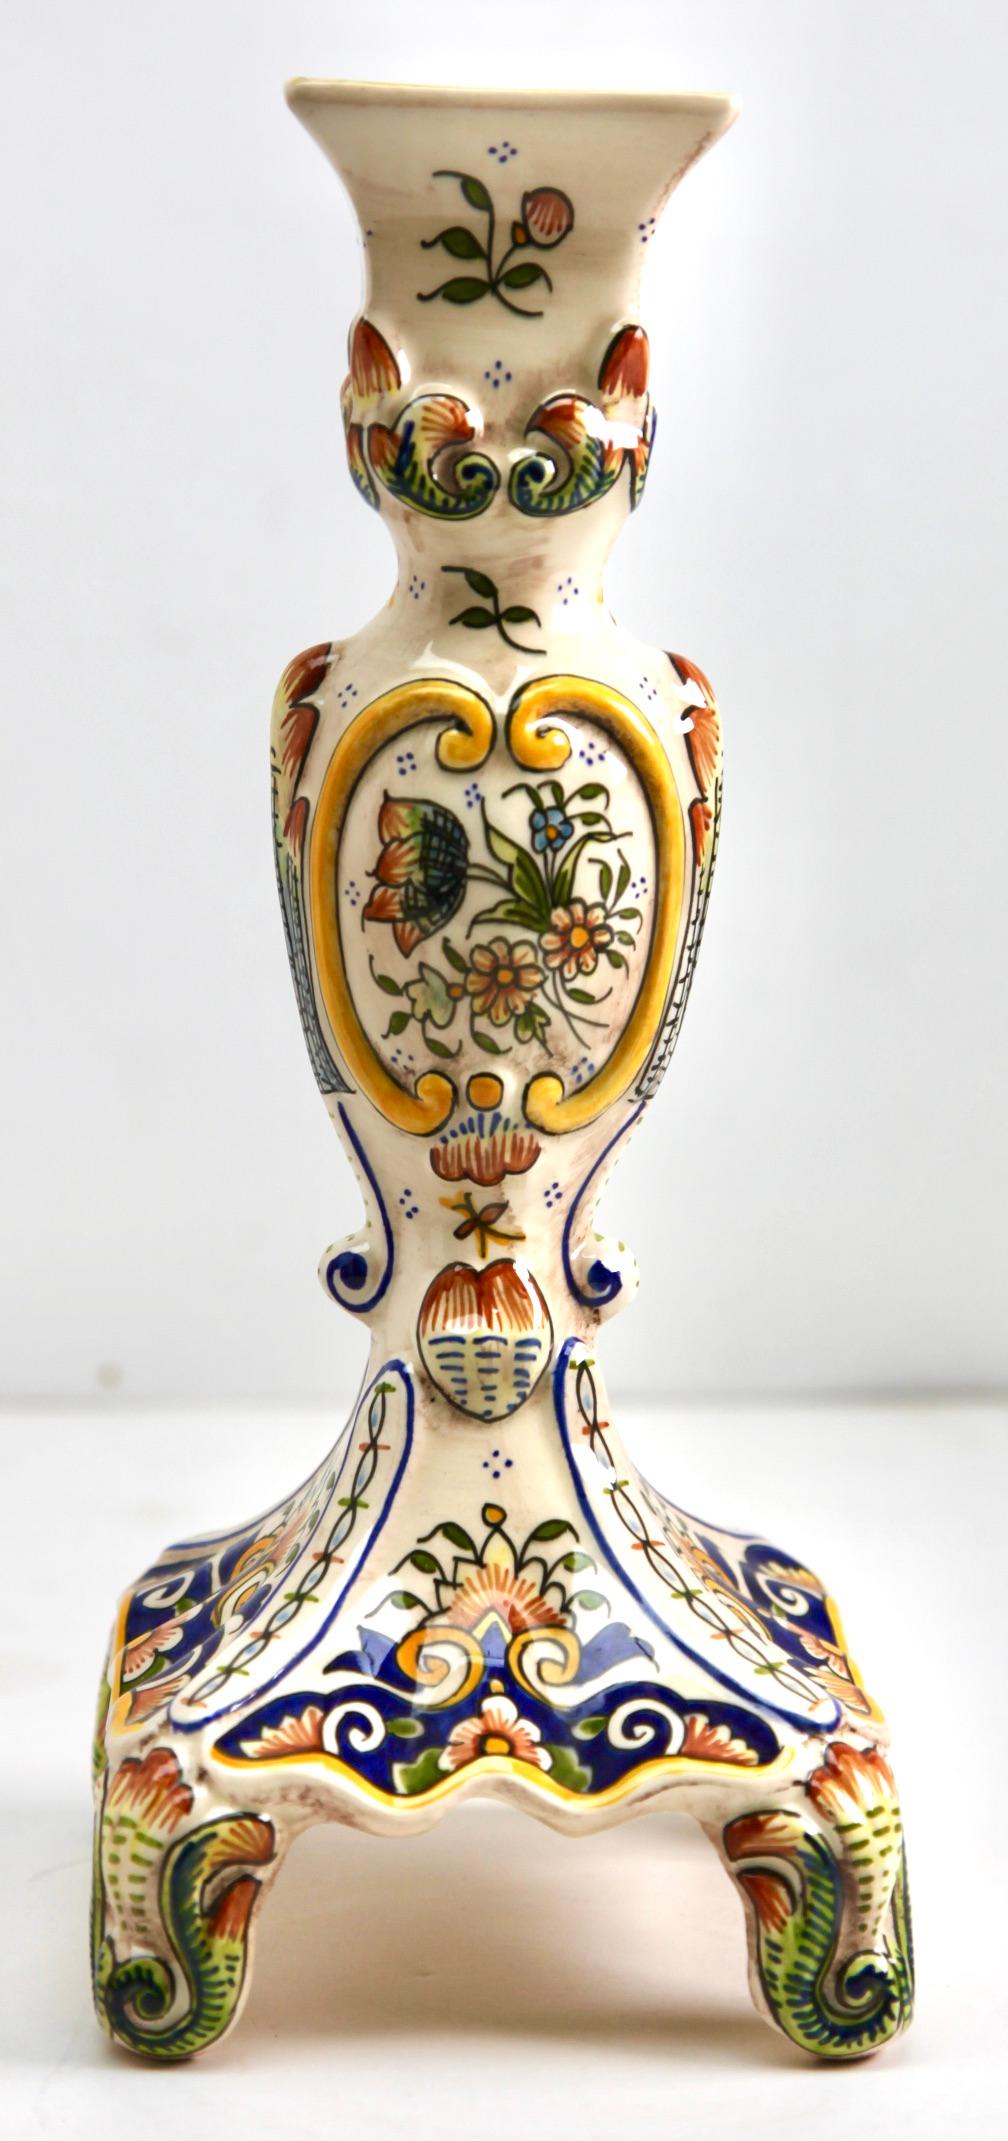 Les motifs de ce groupe de faïence française sont typiques de la poterie fabriquée à Rouen. 
Chandelier français en faïence peint à la main du début du 20e siècle, de Rouen
Marquage sur le fond : 